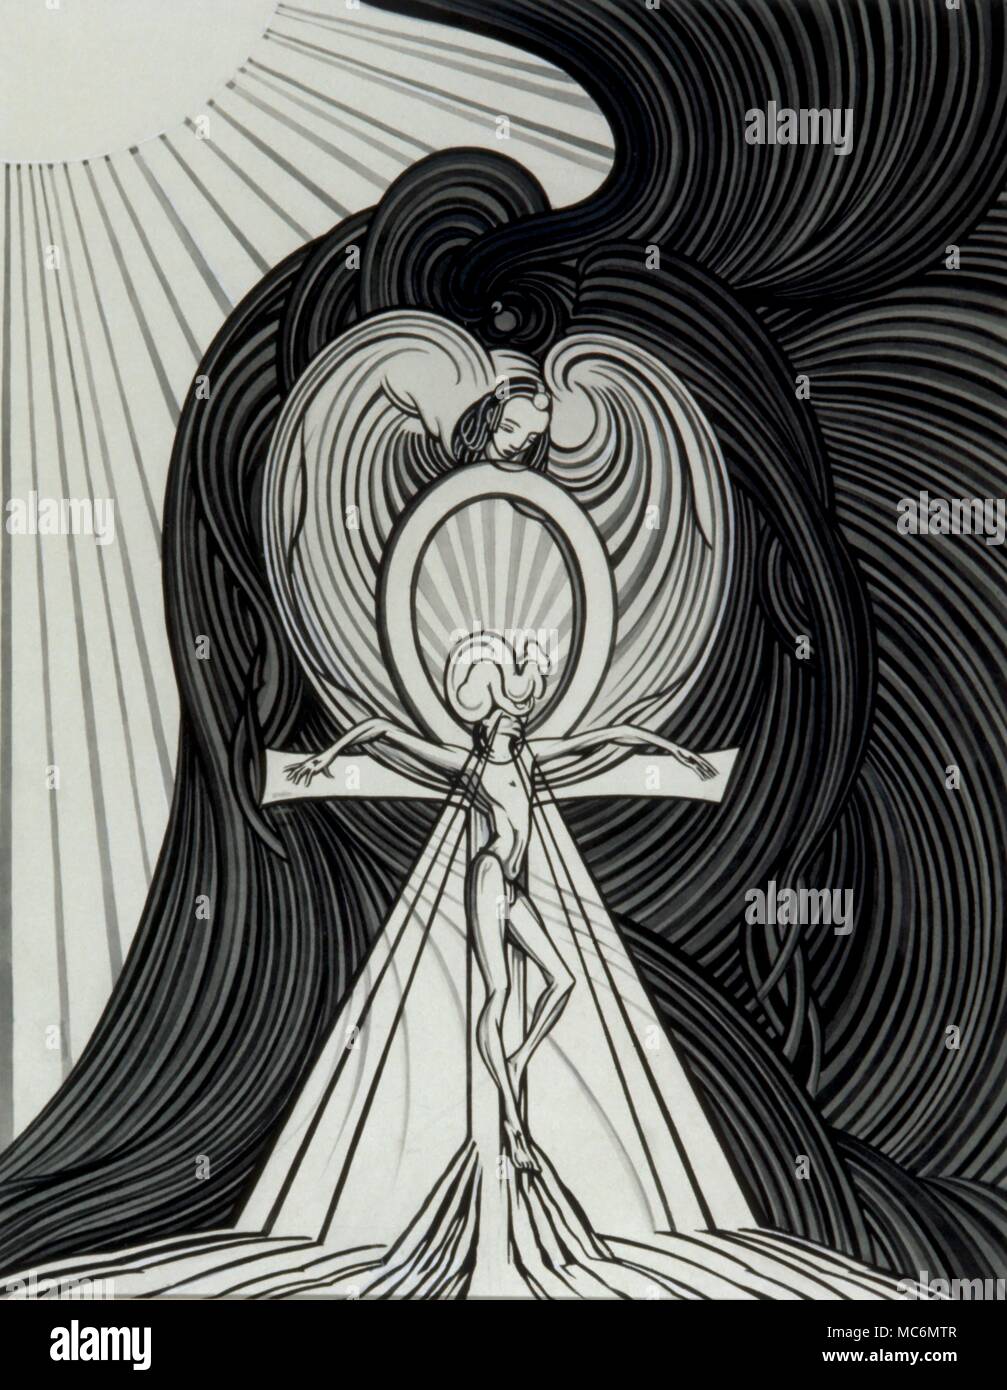 Simboli - Arte occulta - mitologia egiziana - Ankh grande illustrazione monocromatica, il mantello di impostare, (circa 1950), raffigurante l'Egiziano equivalente del diavolo crocifisso su una croce ankh. Come illustrazione lascia intendere, il reame di set è buio - illuminato area solare è governata da suo fratello, Osiride. Foto Stock